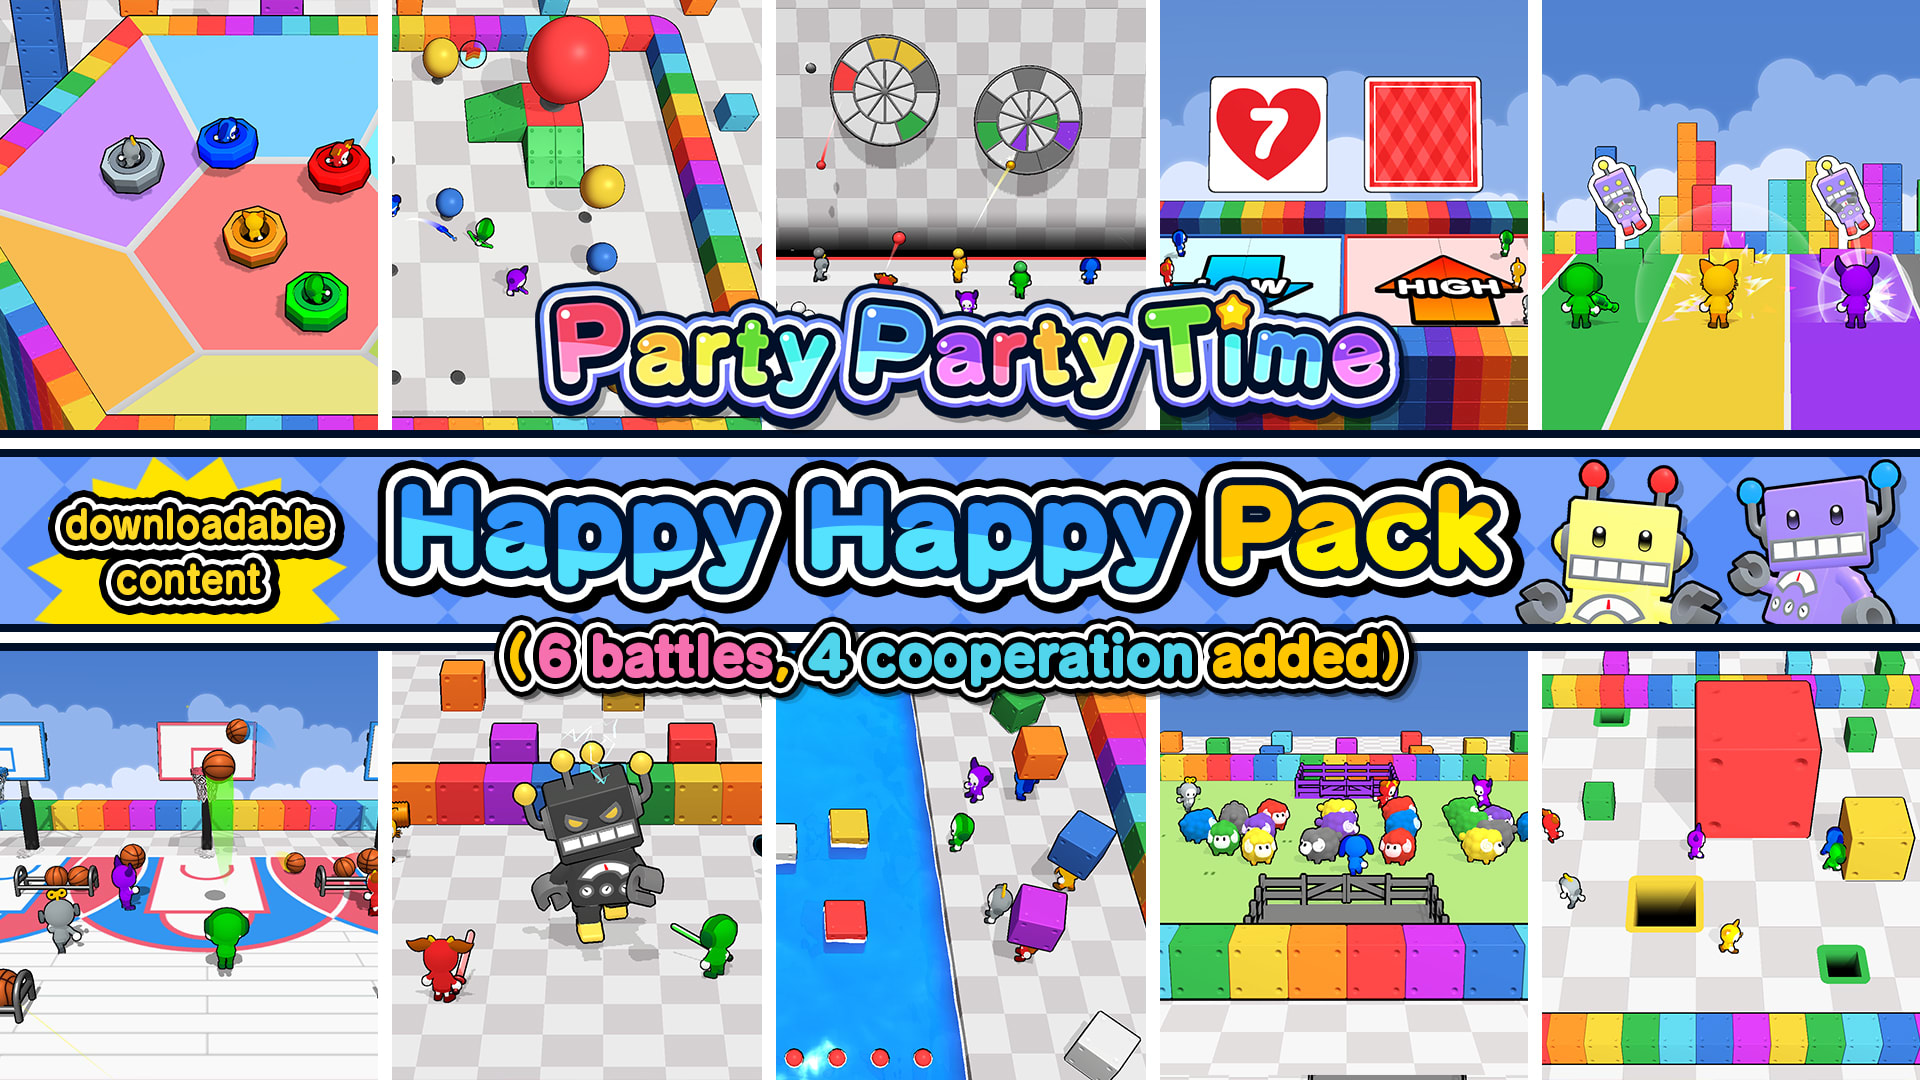 Happy Happy Pack 1